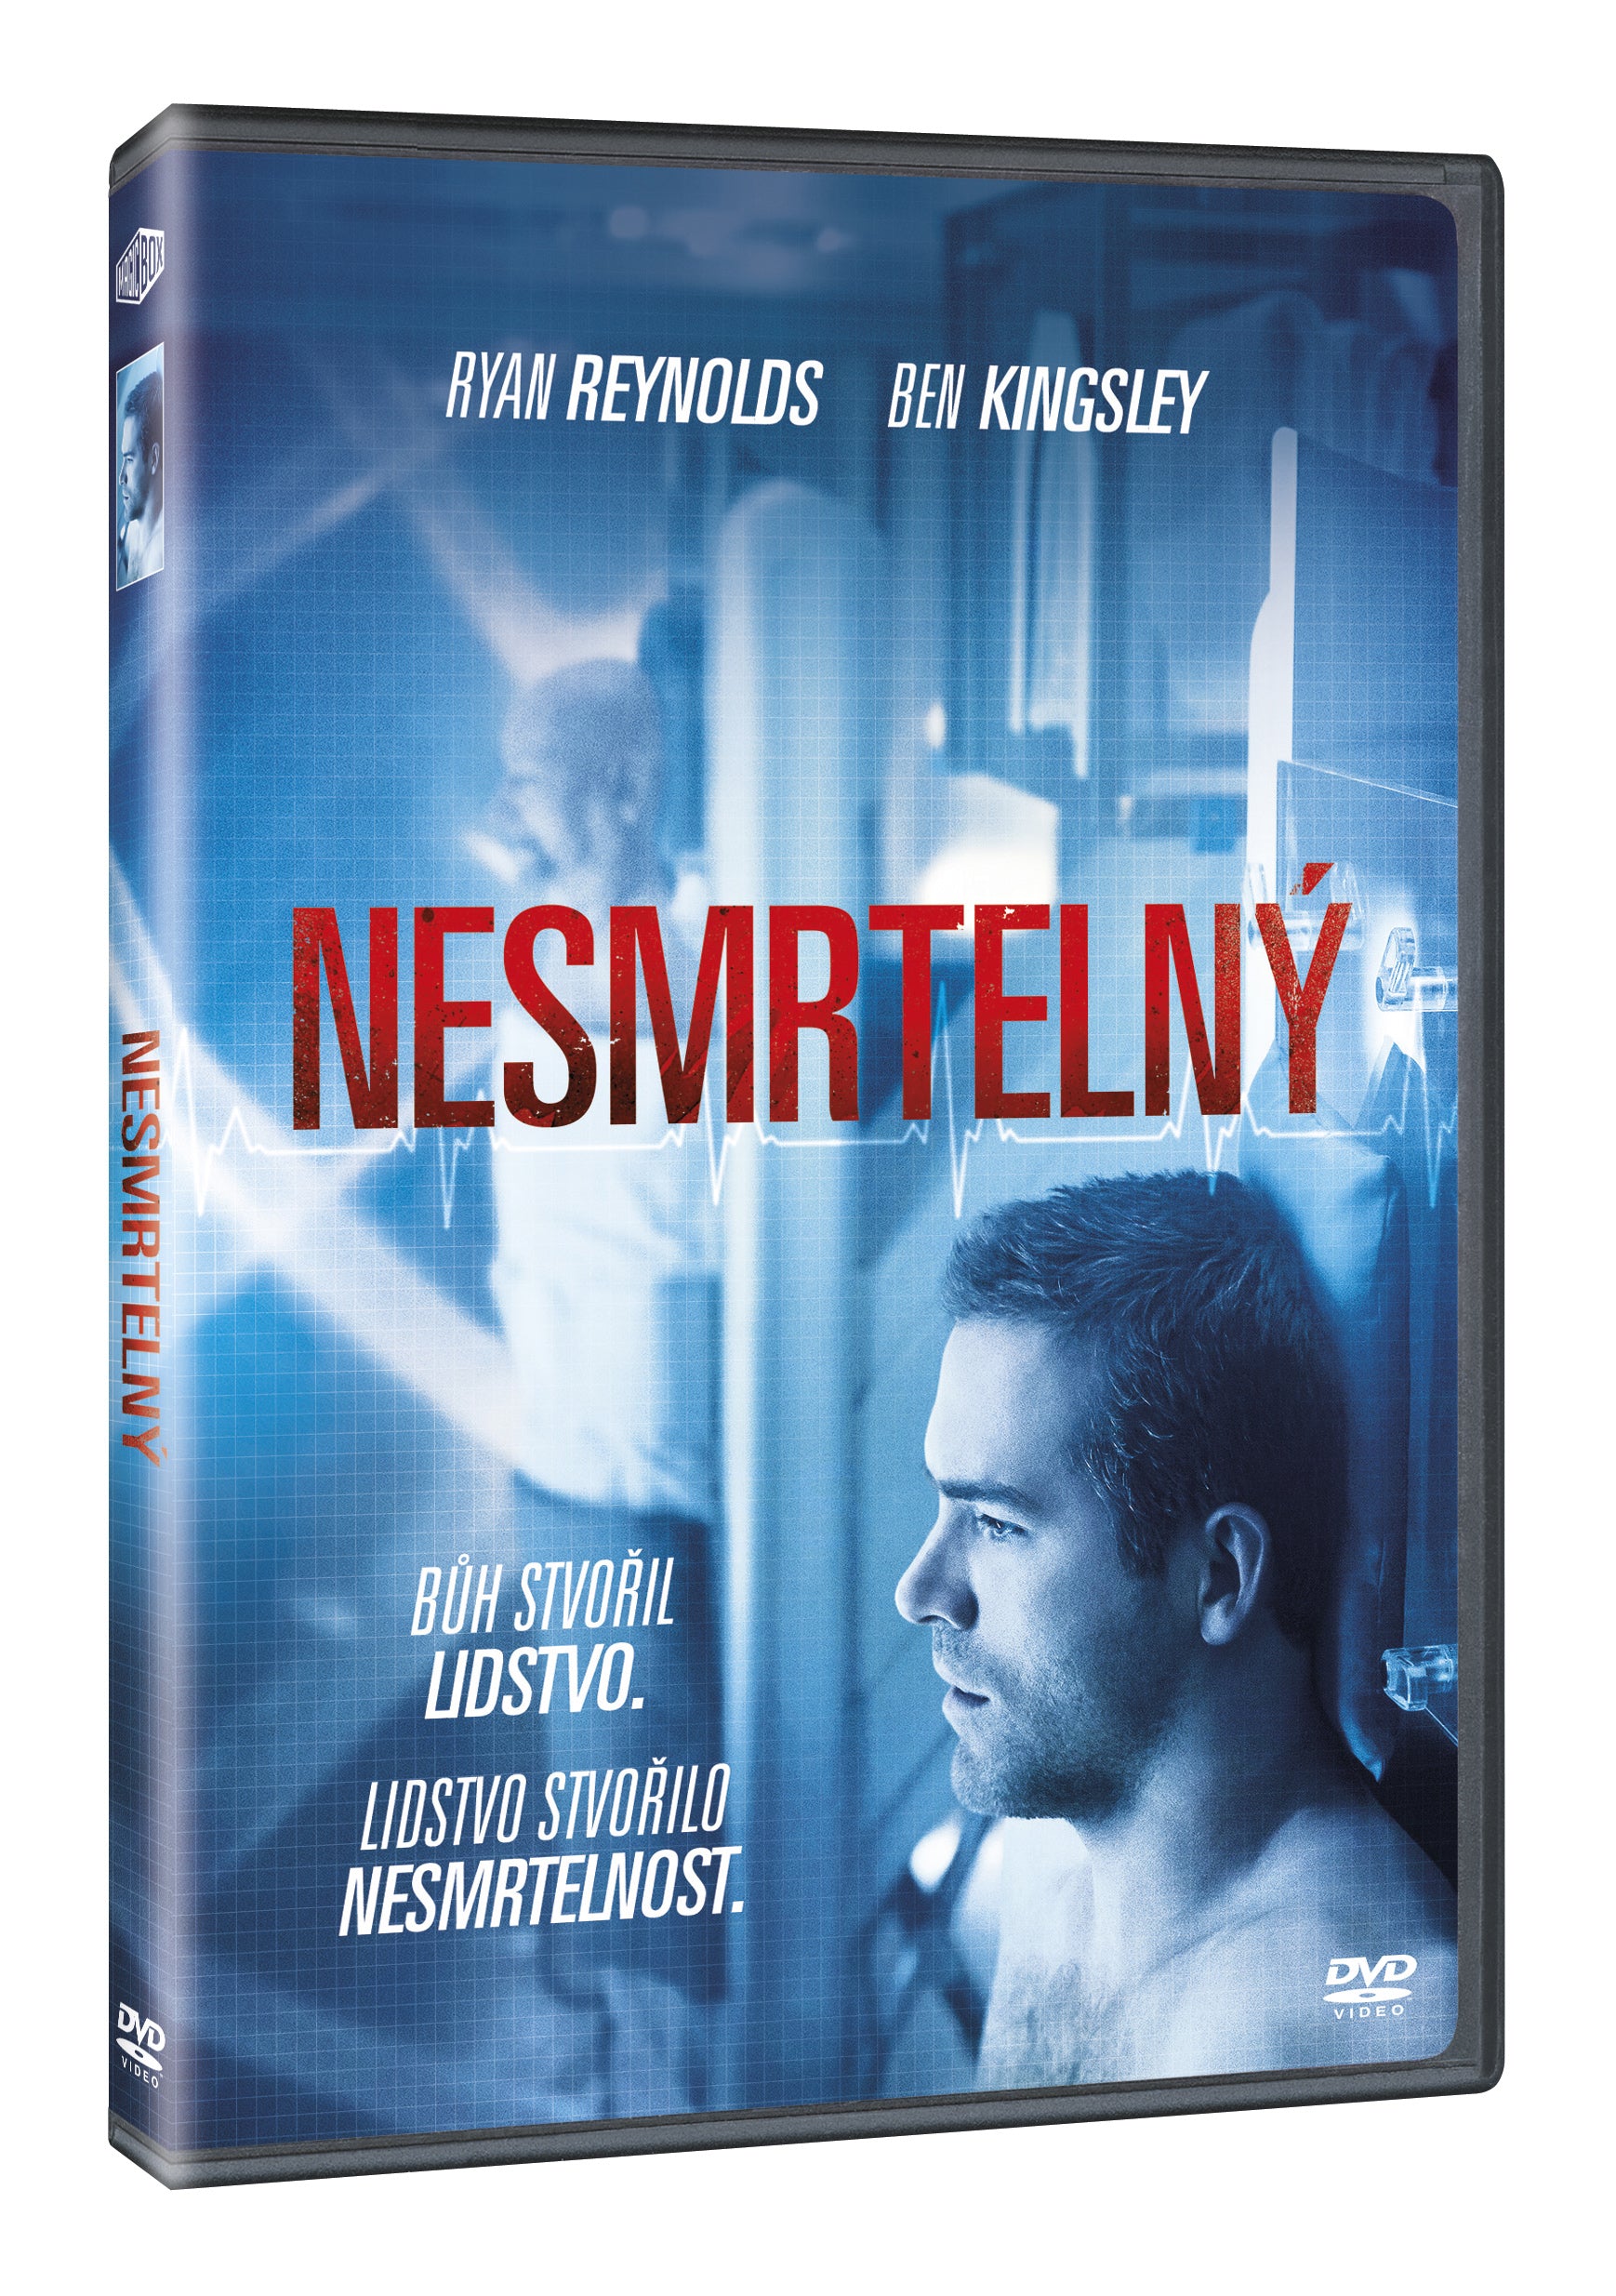 Nesmrtelny DVD / Self/less